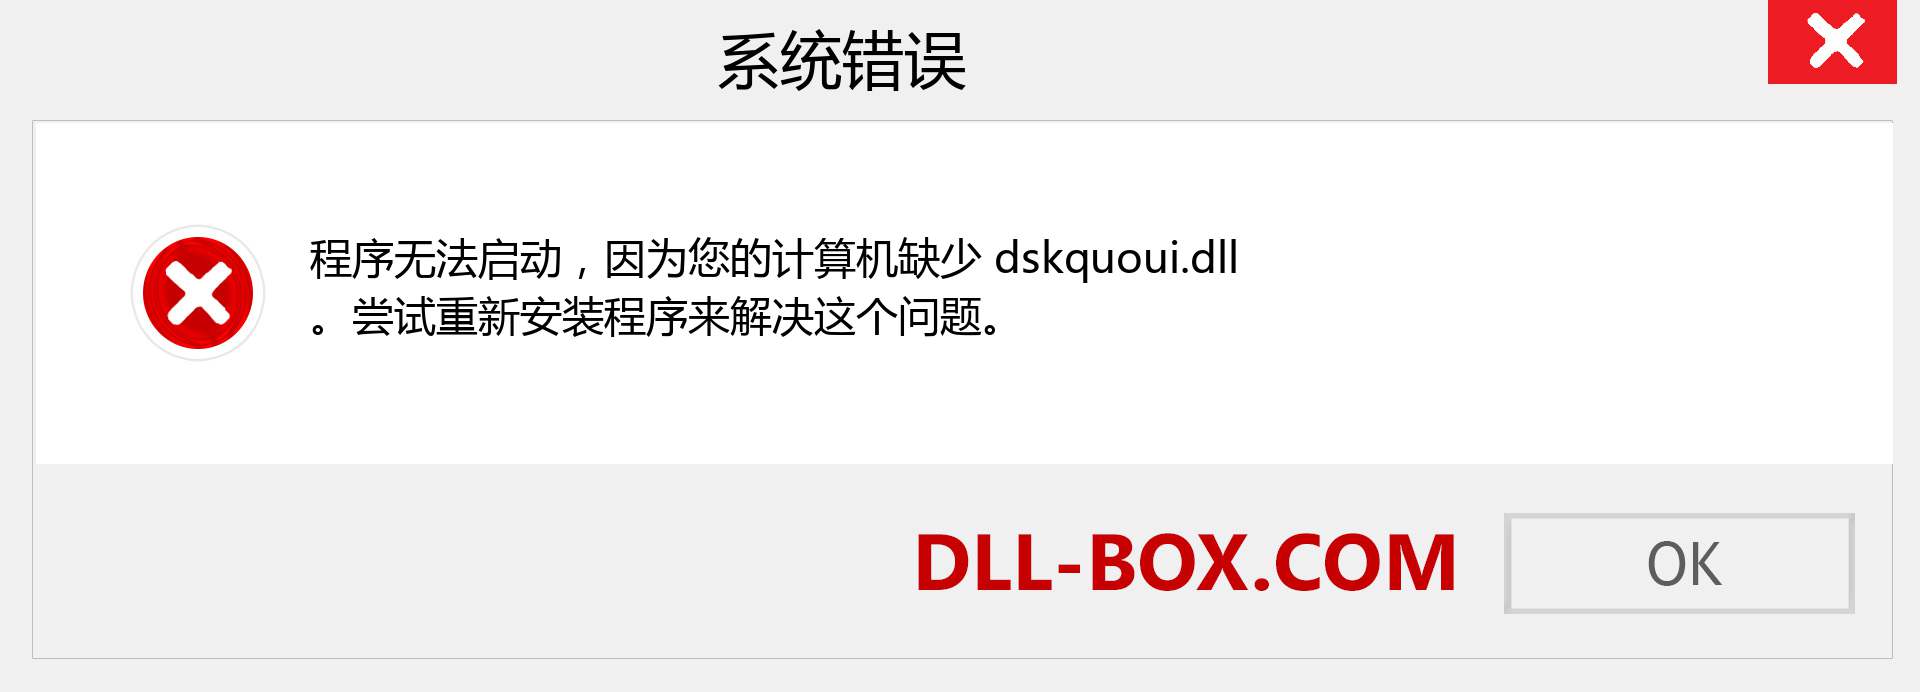 dskquoui.dll 文件丢失？。 适用于 Windows 7、8、10 的下载 - 修复 Windows、照片、图像上的 dskquoui dll 丢失错误